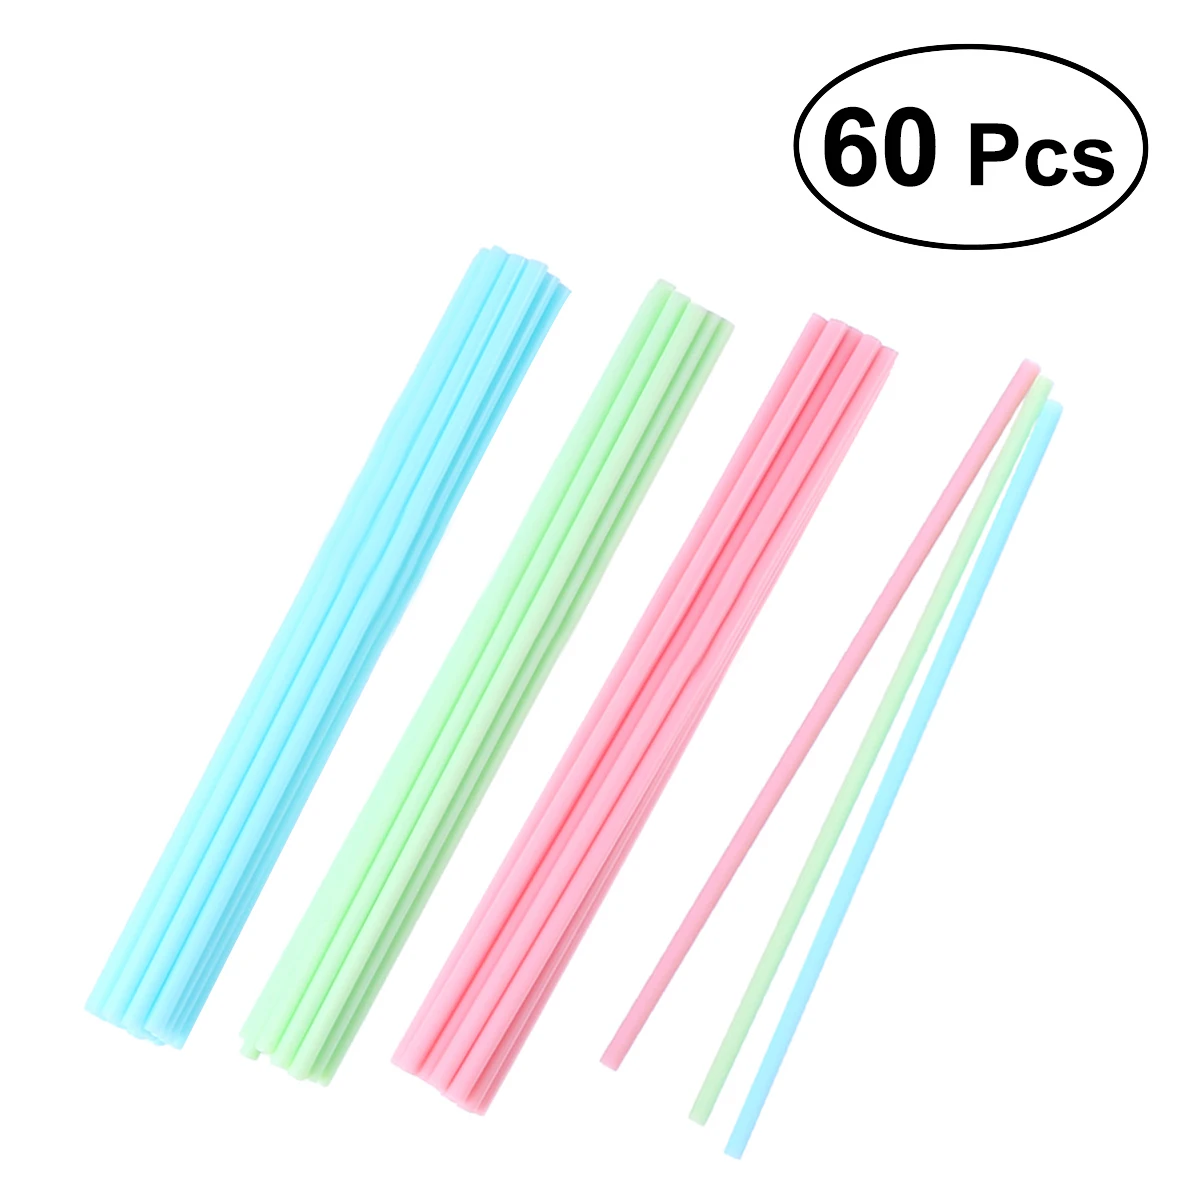 60 палочек для торта 15 см пастельные цвета Кухня Ремесло пластиковые ручки для торта цветные палочки для леденца